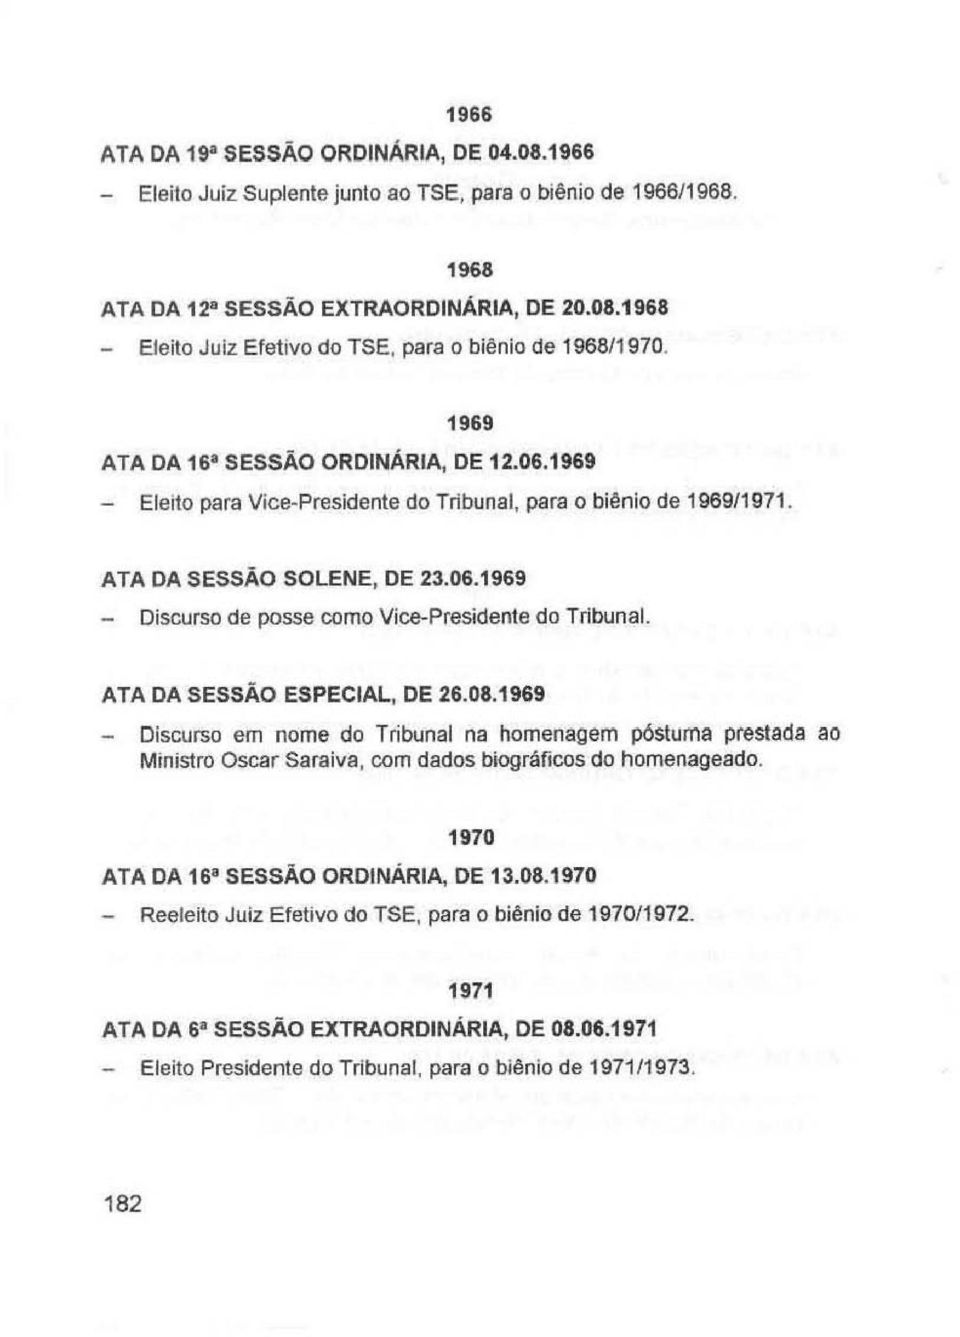 ATA DA SESSÃO ESPECIAL, DE 26.08.1969 _ Discurso em nome do Tribunal na homenagem póstuma prestada ao Ministro Oscar Saraiva, com dados biográficos do homenageado.